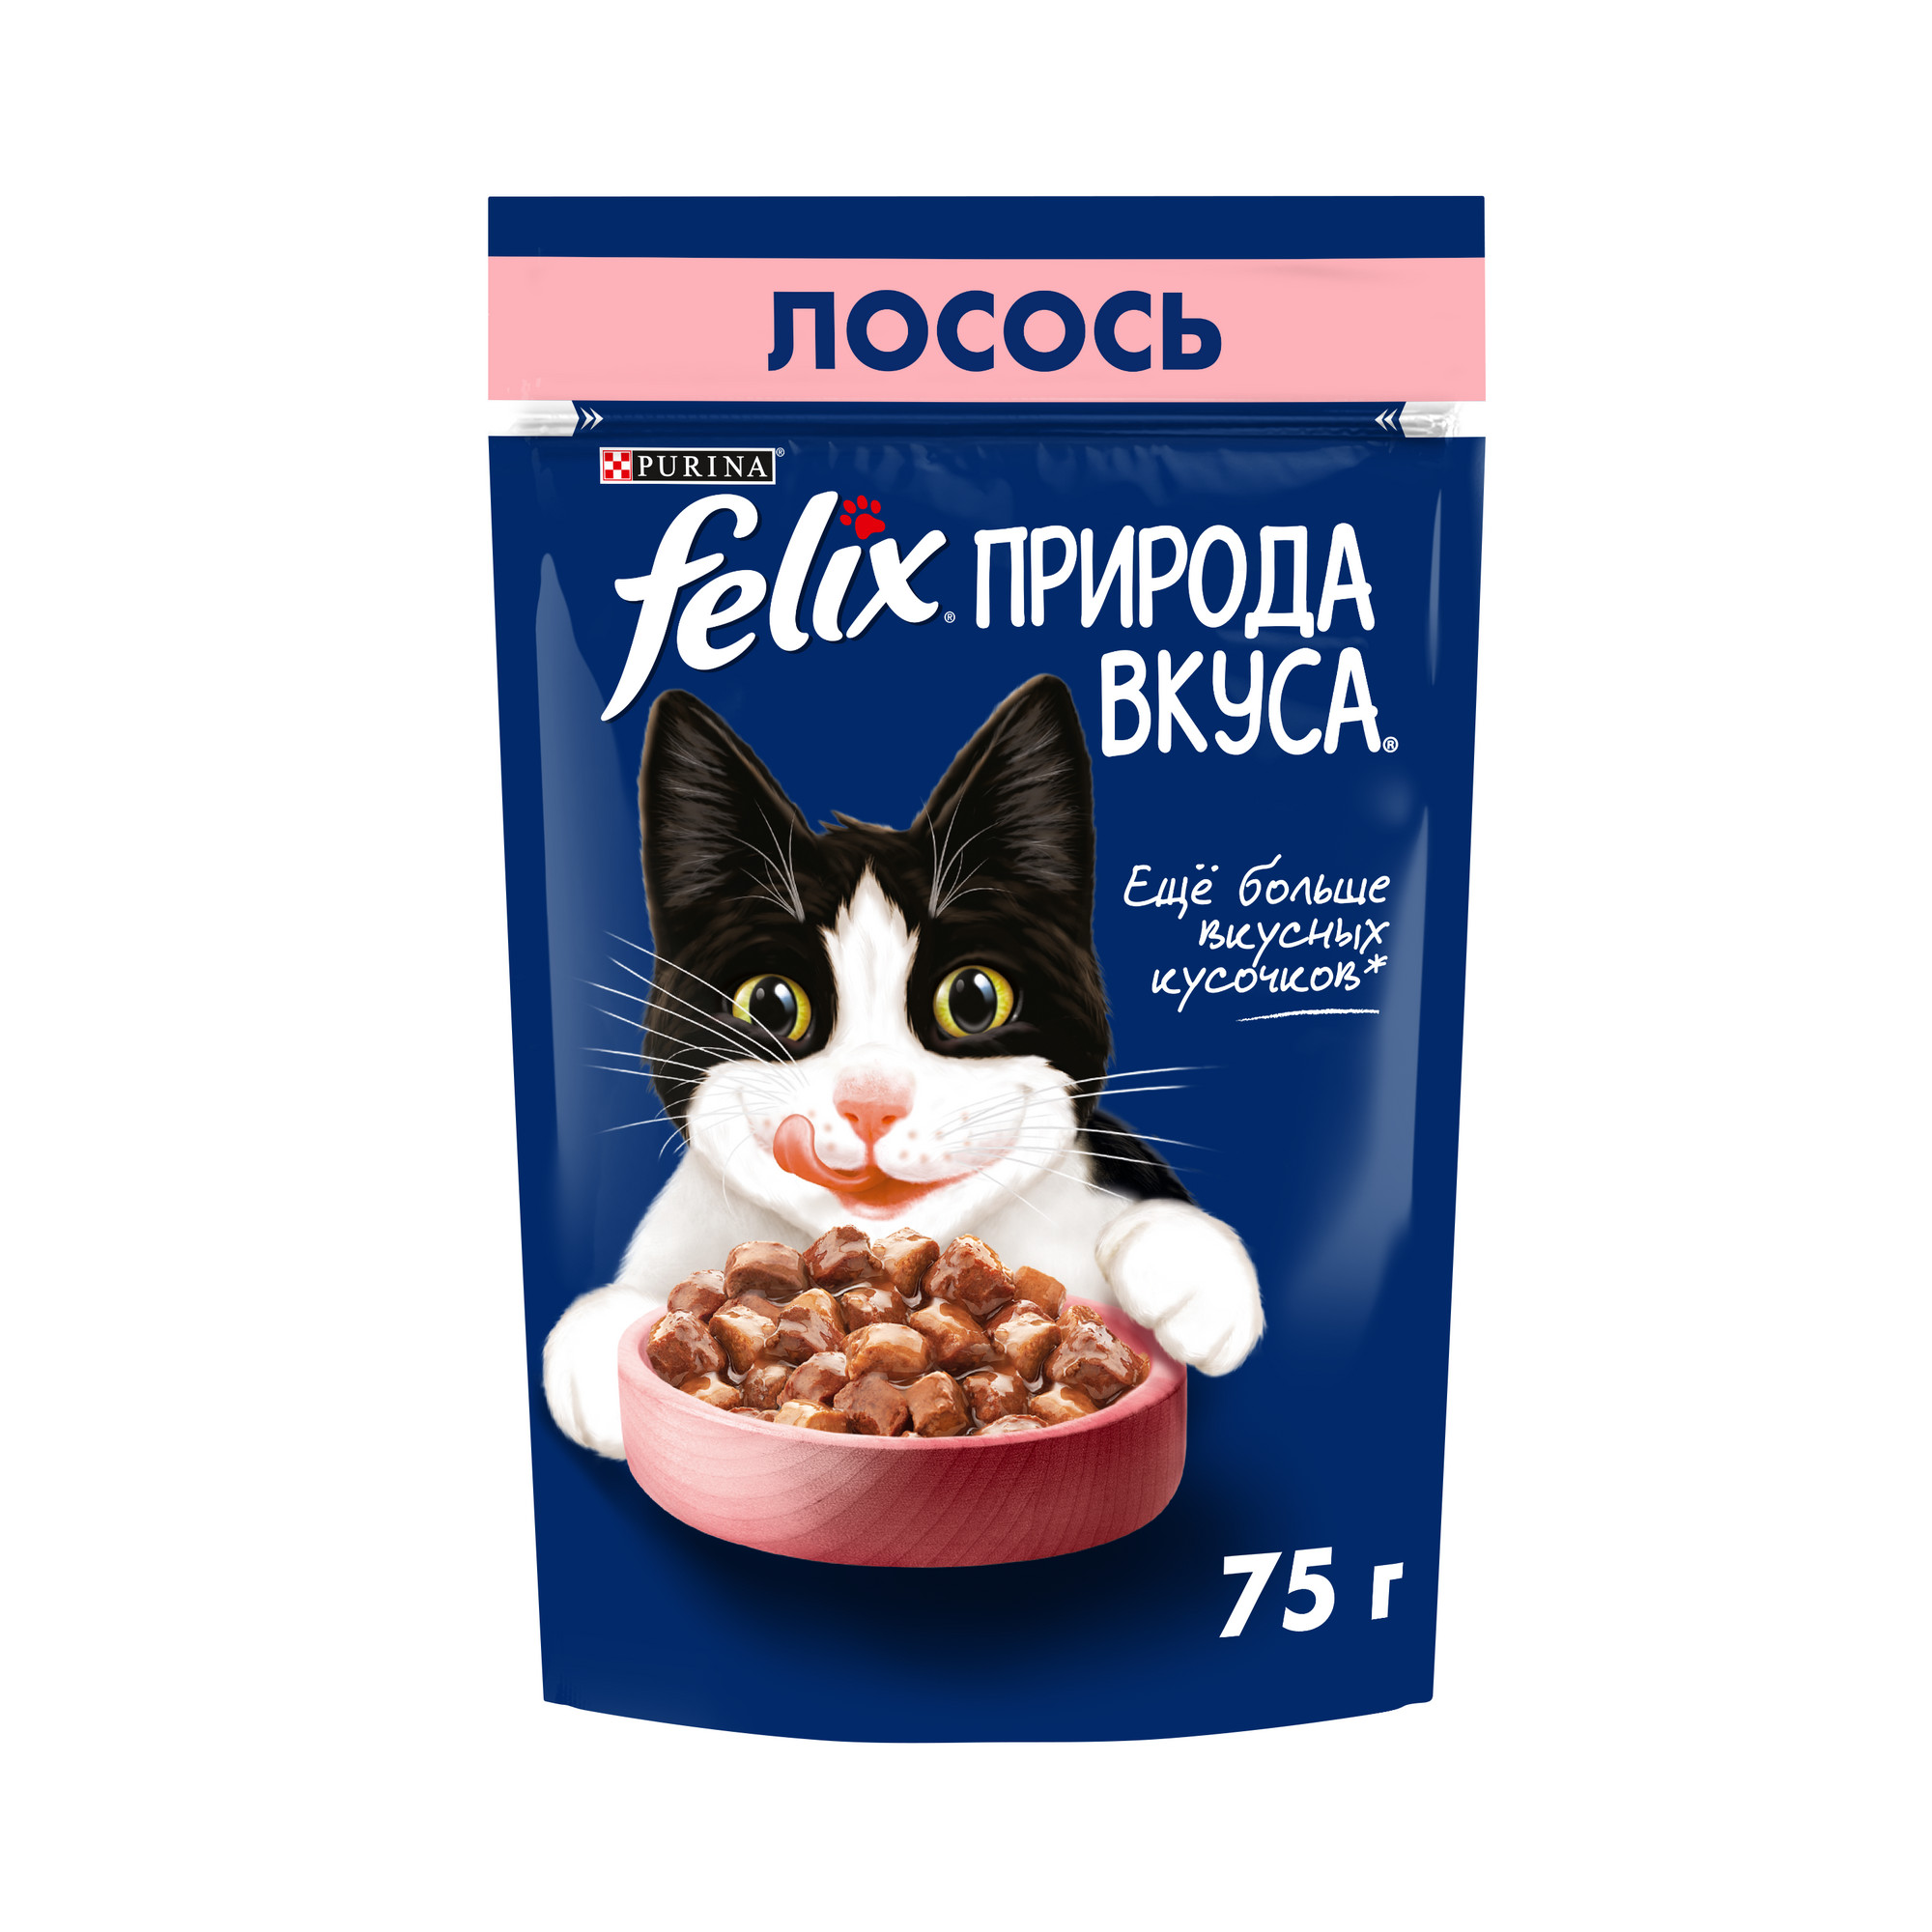 Влажный корм для кошек Felix Природа вкуса, с лососем в соусе, 75 г - купить в Мегамаркет Екб, цена на Мегамаркет